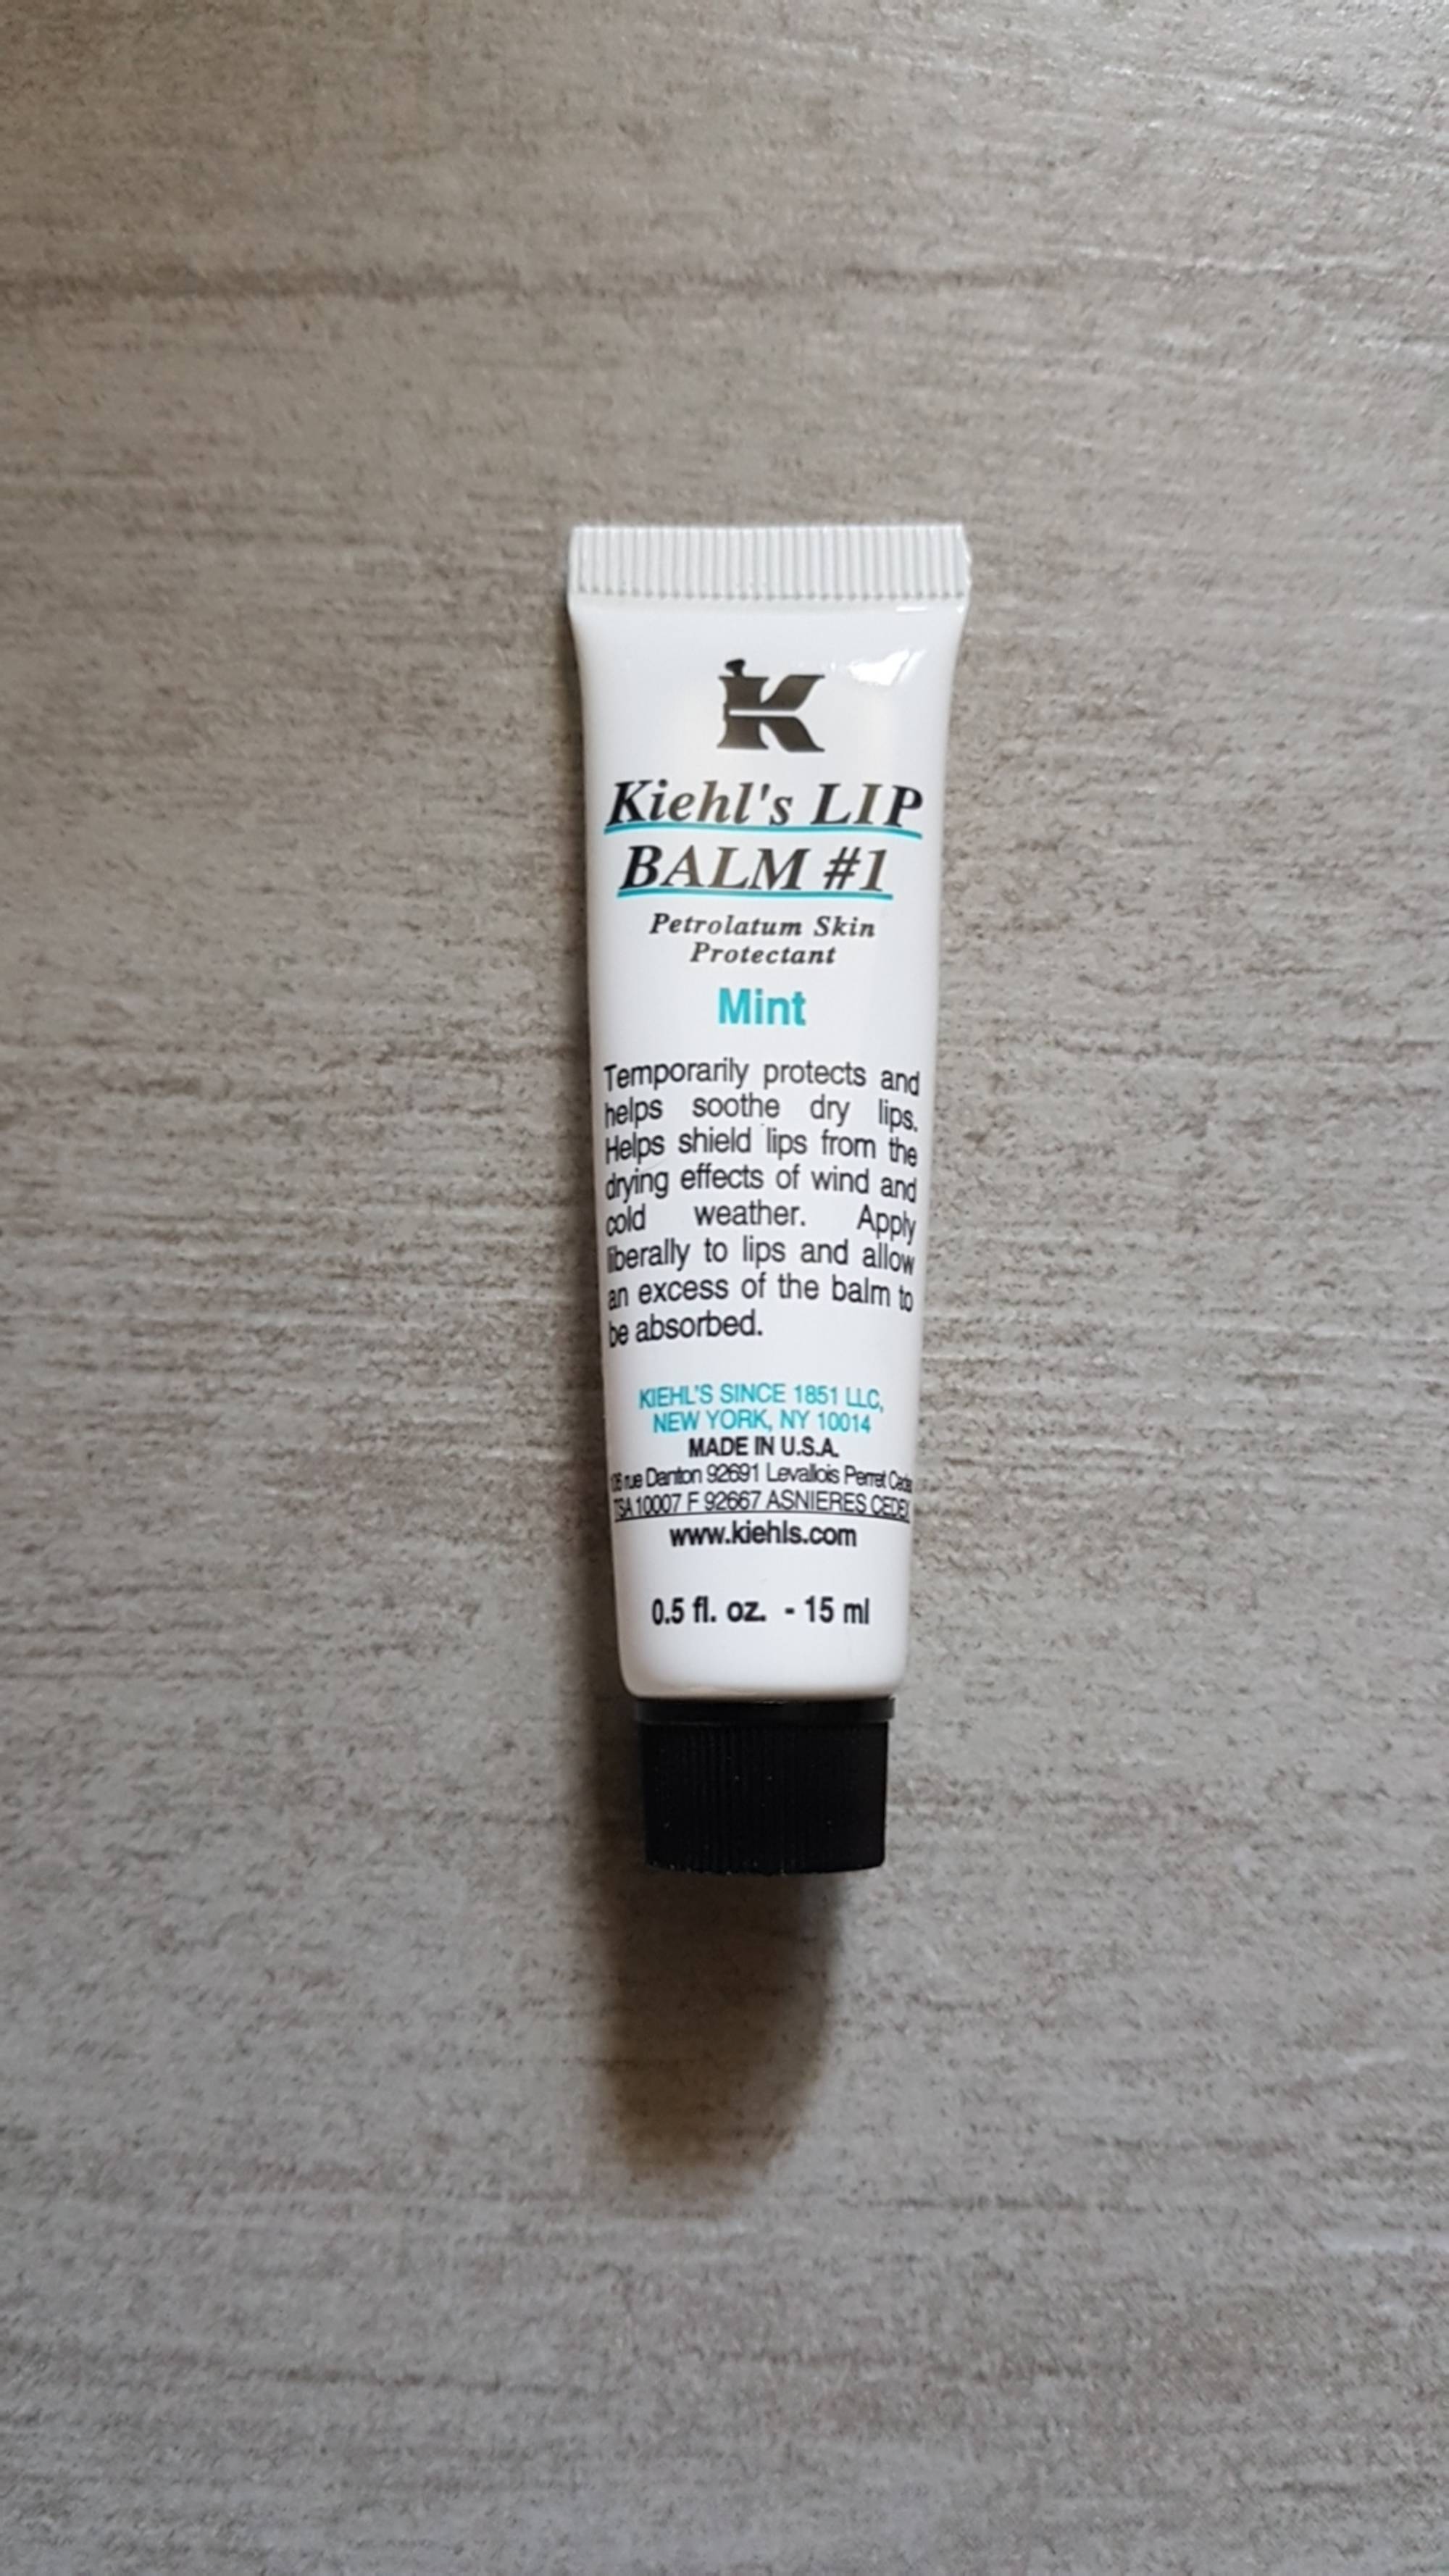 KIEHL'S - Lip balm # 1 mint - Baume hydratant protecteur